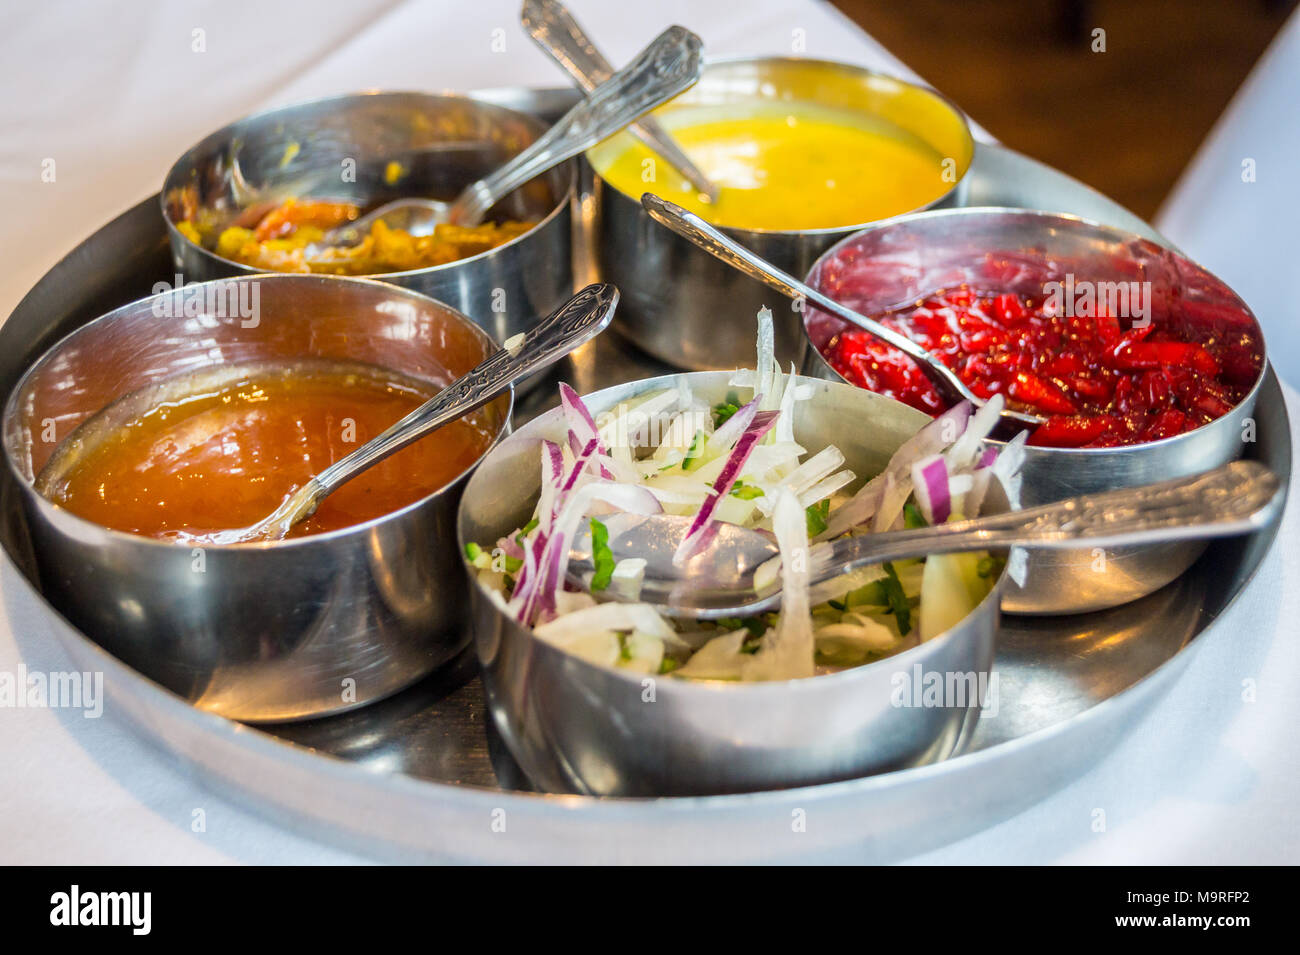 Sélection de sauces, condiments et marinades pour poppadums, épices masala restaurant indien, anciennement Tandoori Kismet, Chipping Ongar, Essex, Angleterre Banque D'Images